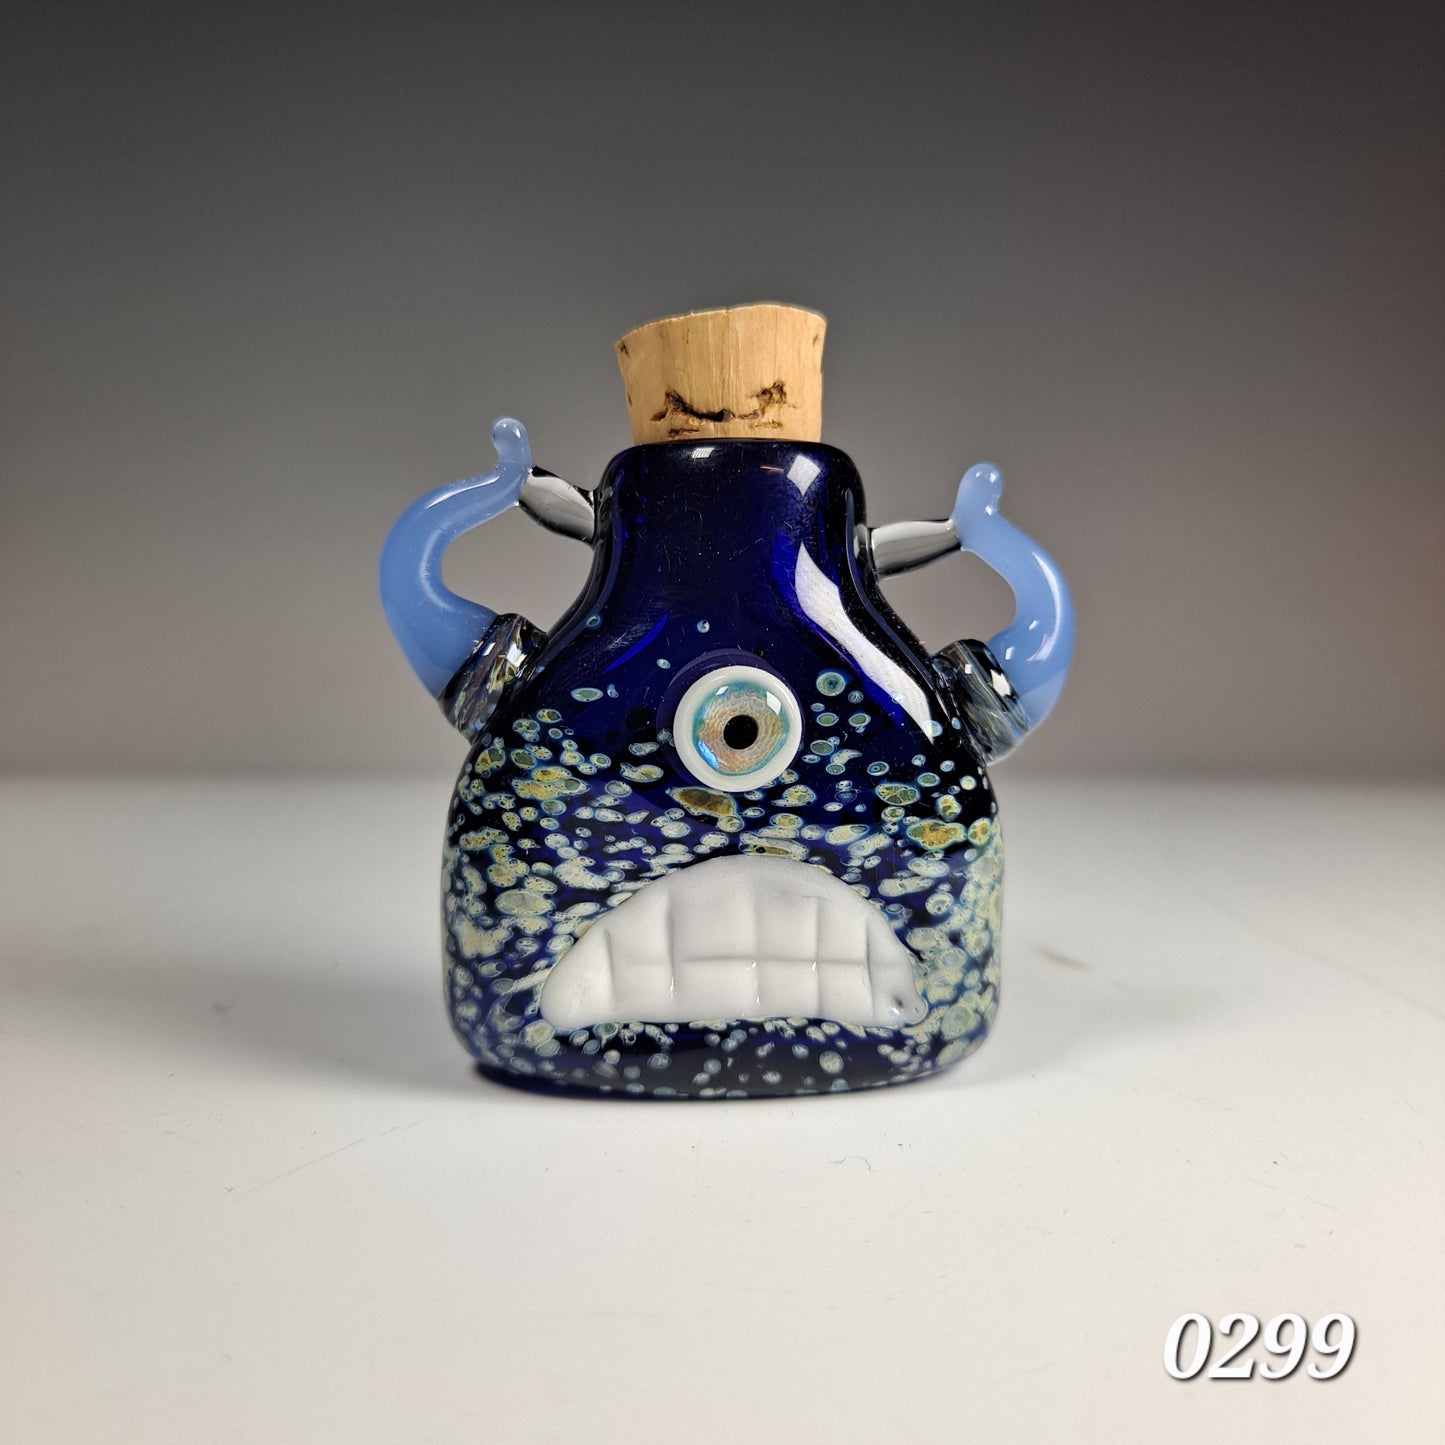 Eyeball Monster Potion Bottle Pendant Collection